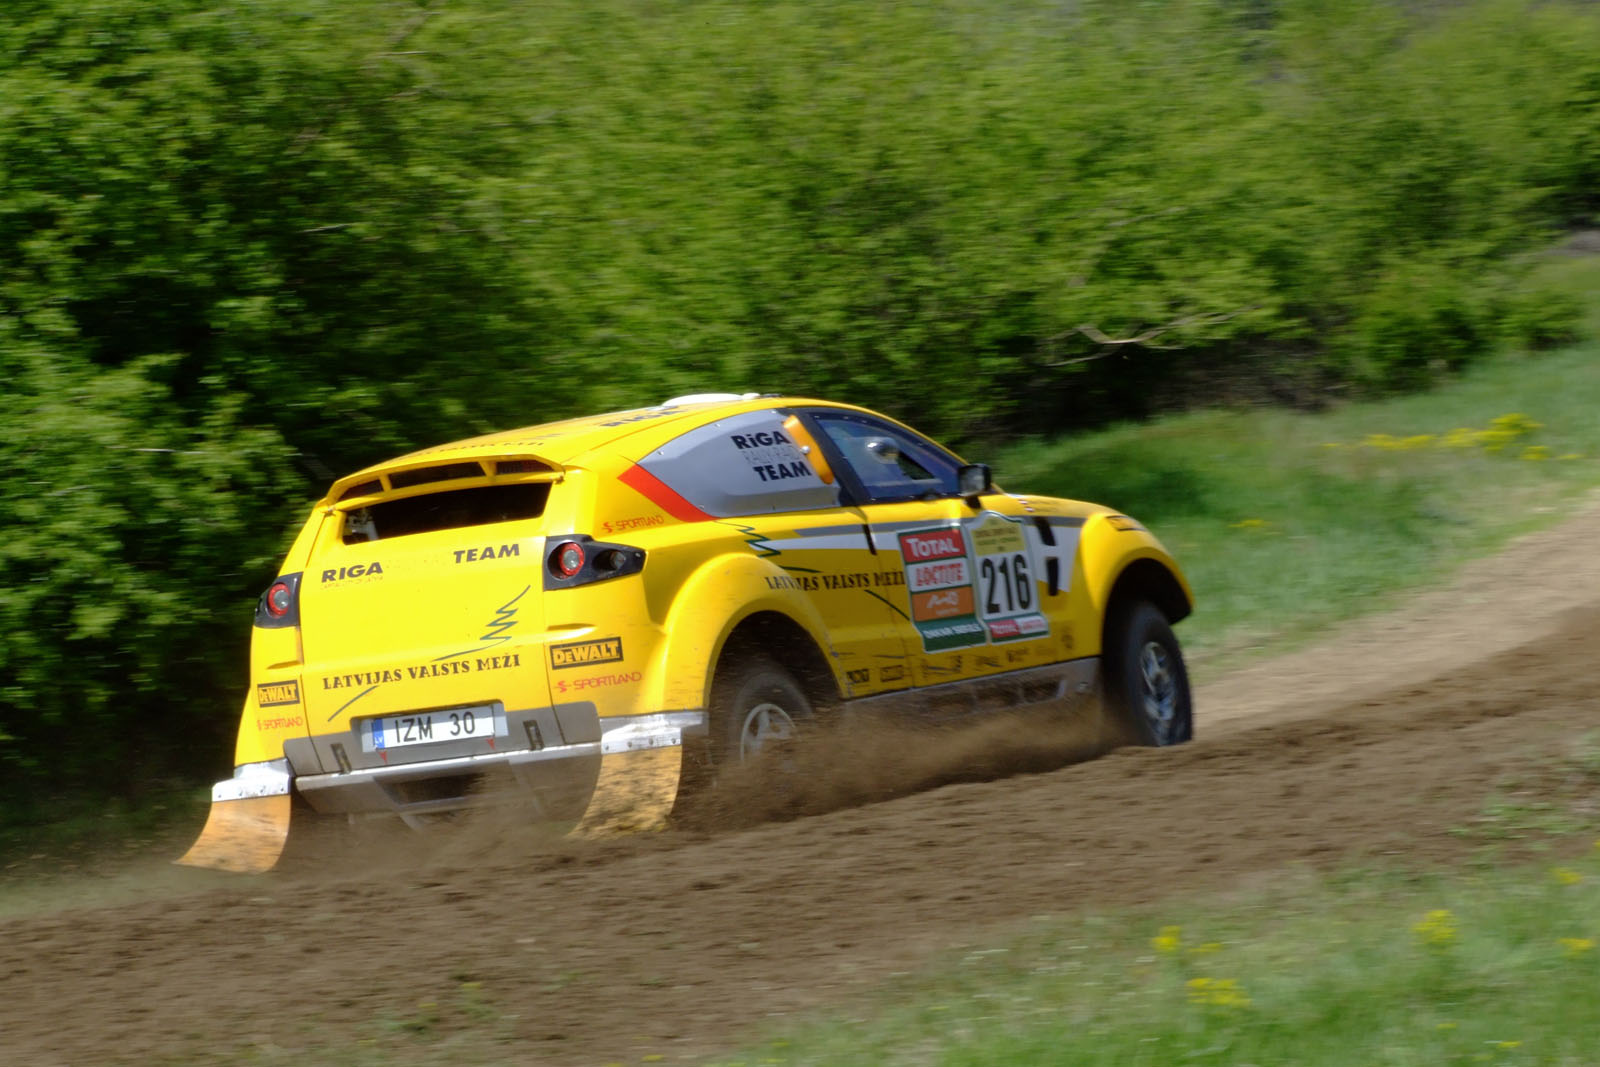 AZIS JANIS/ PRINCIS AINARS - Dakar Series - Central Europe Rally